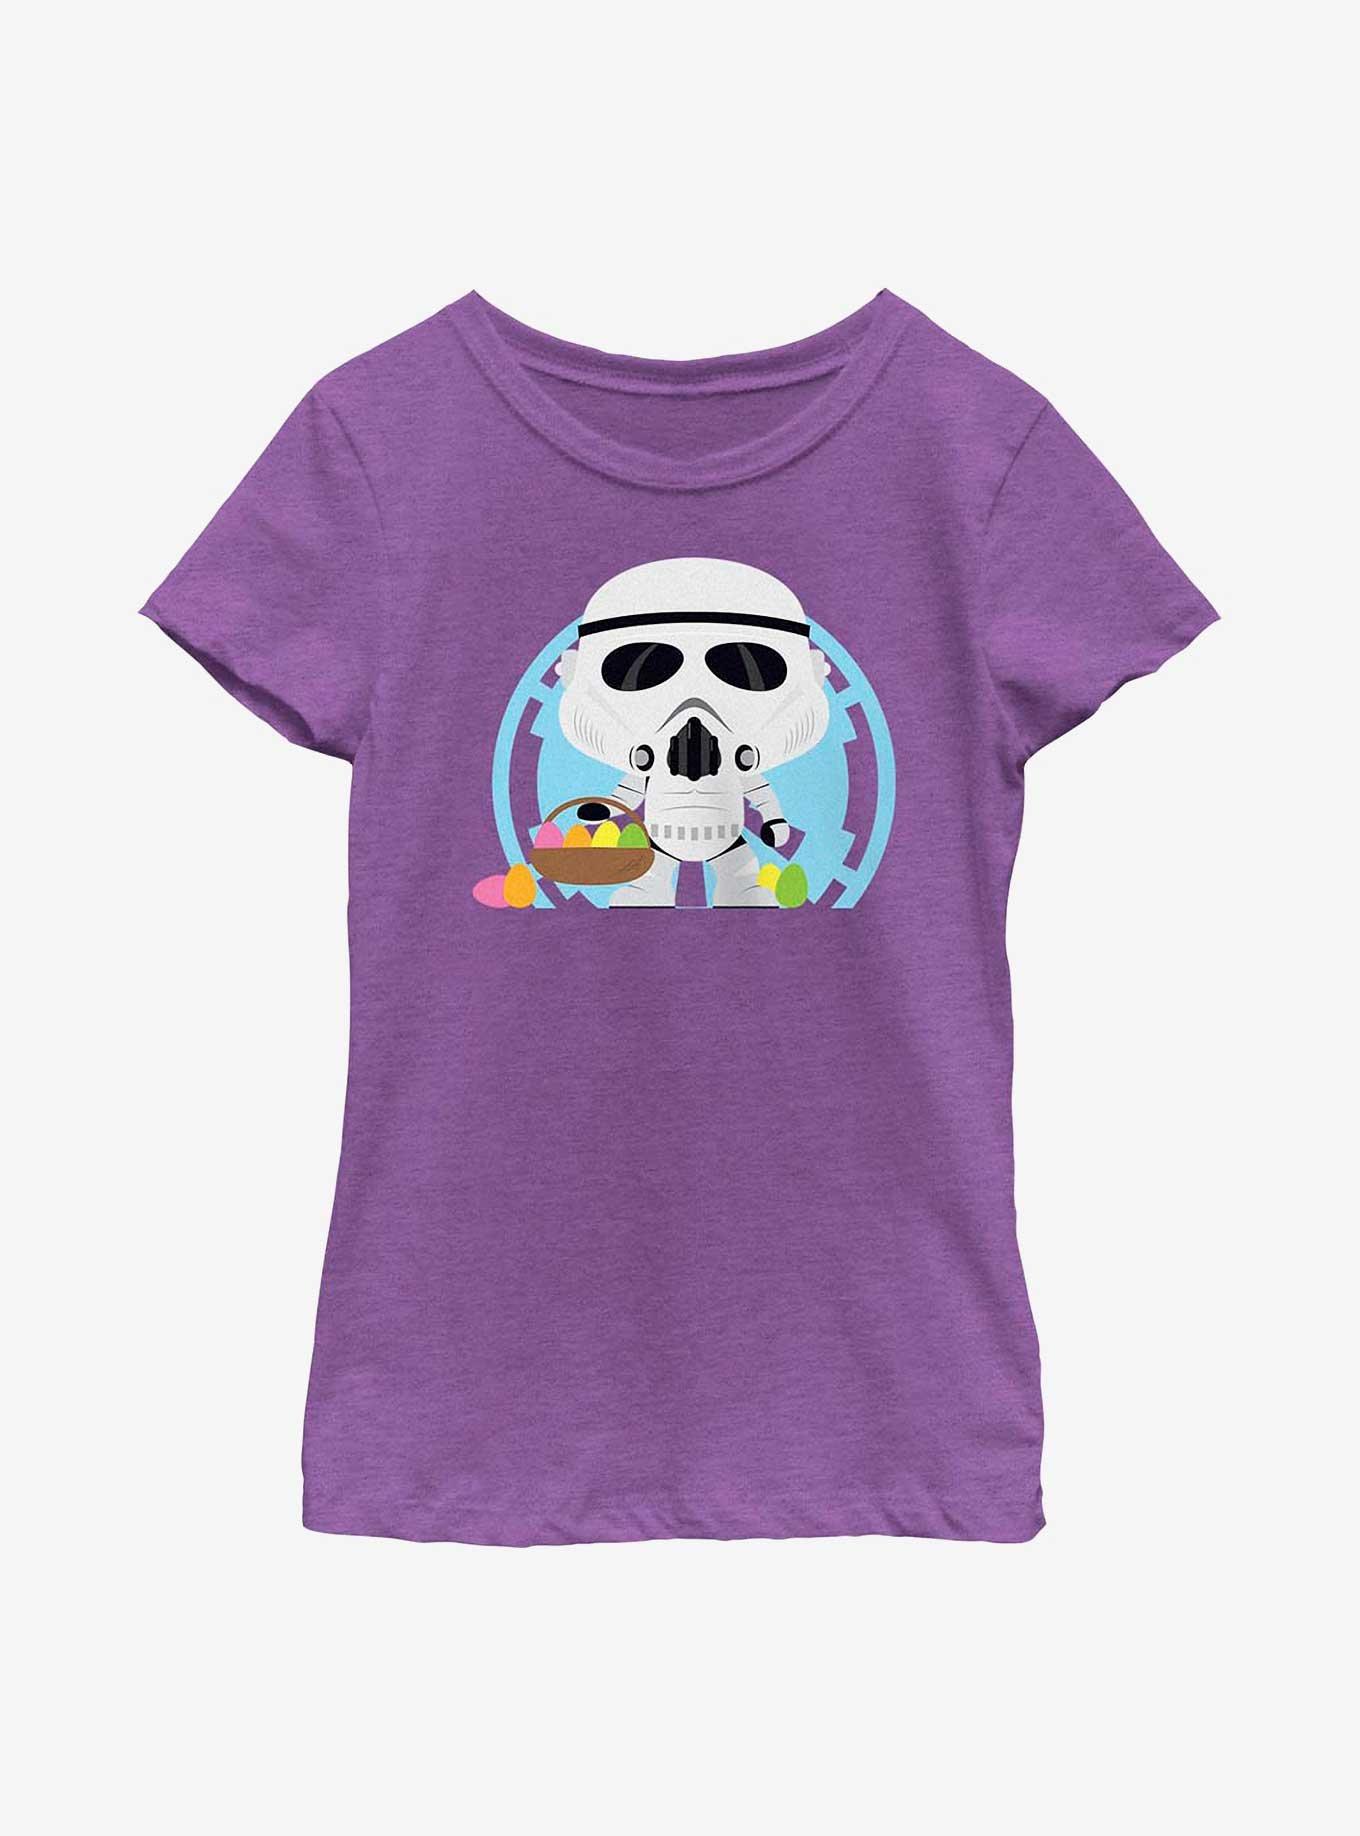 Star Wars Stormtrooper Easter Egg Hunter Youth Girls T-Shirt, , hi-res